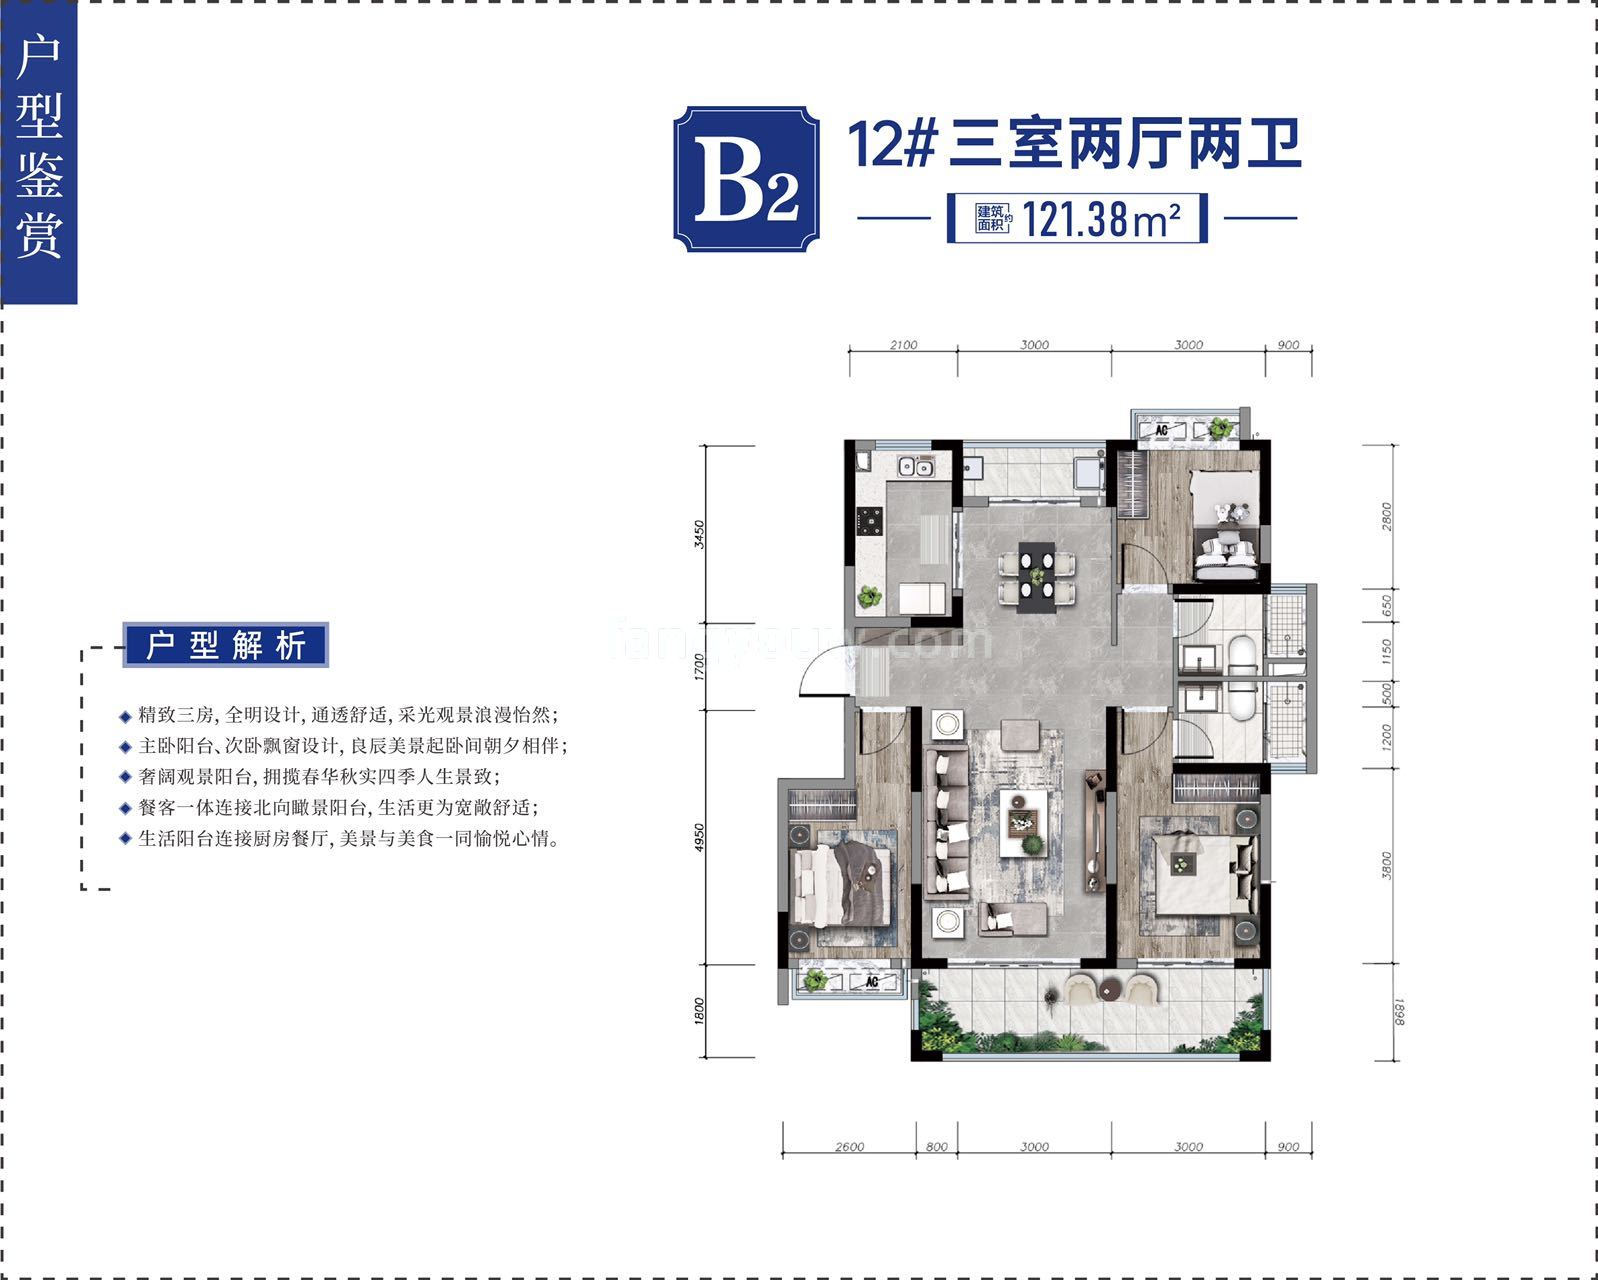 龙海泉城 小高层 B2户型 三室两厅两卫 建筑面积121.38㎡